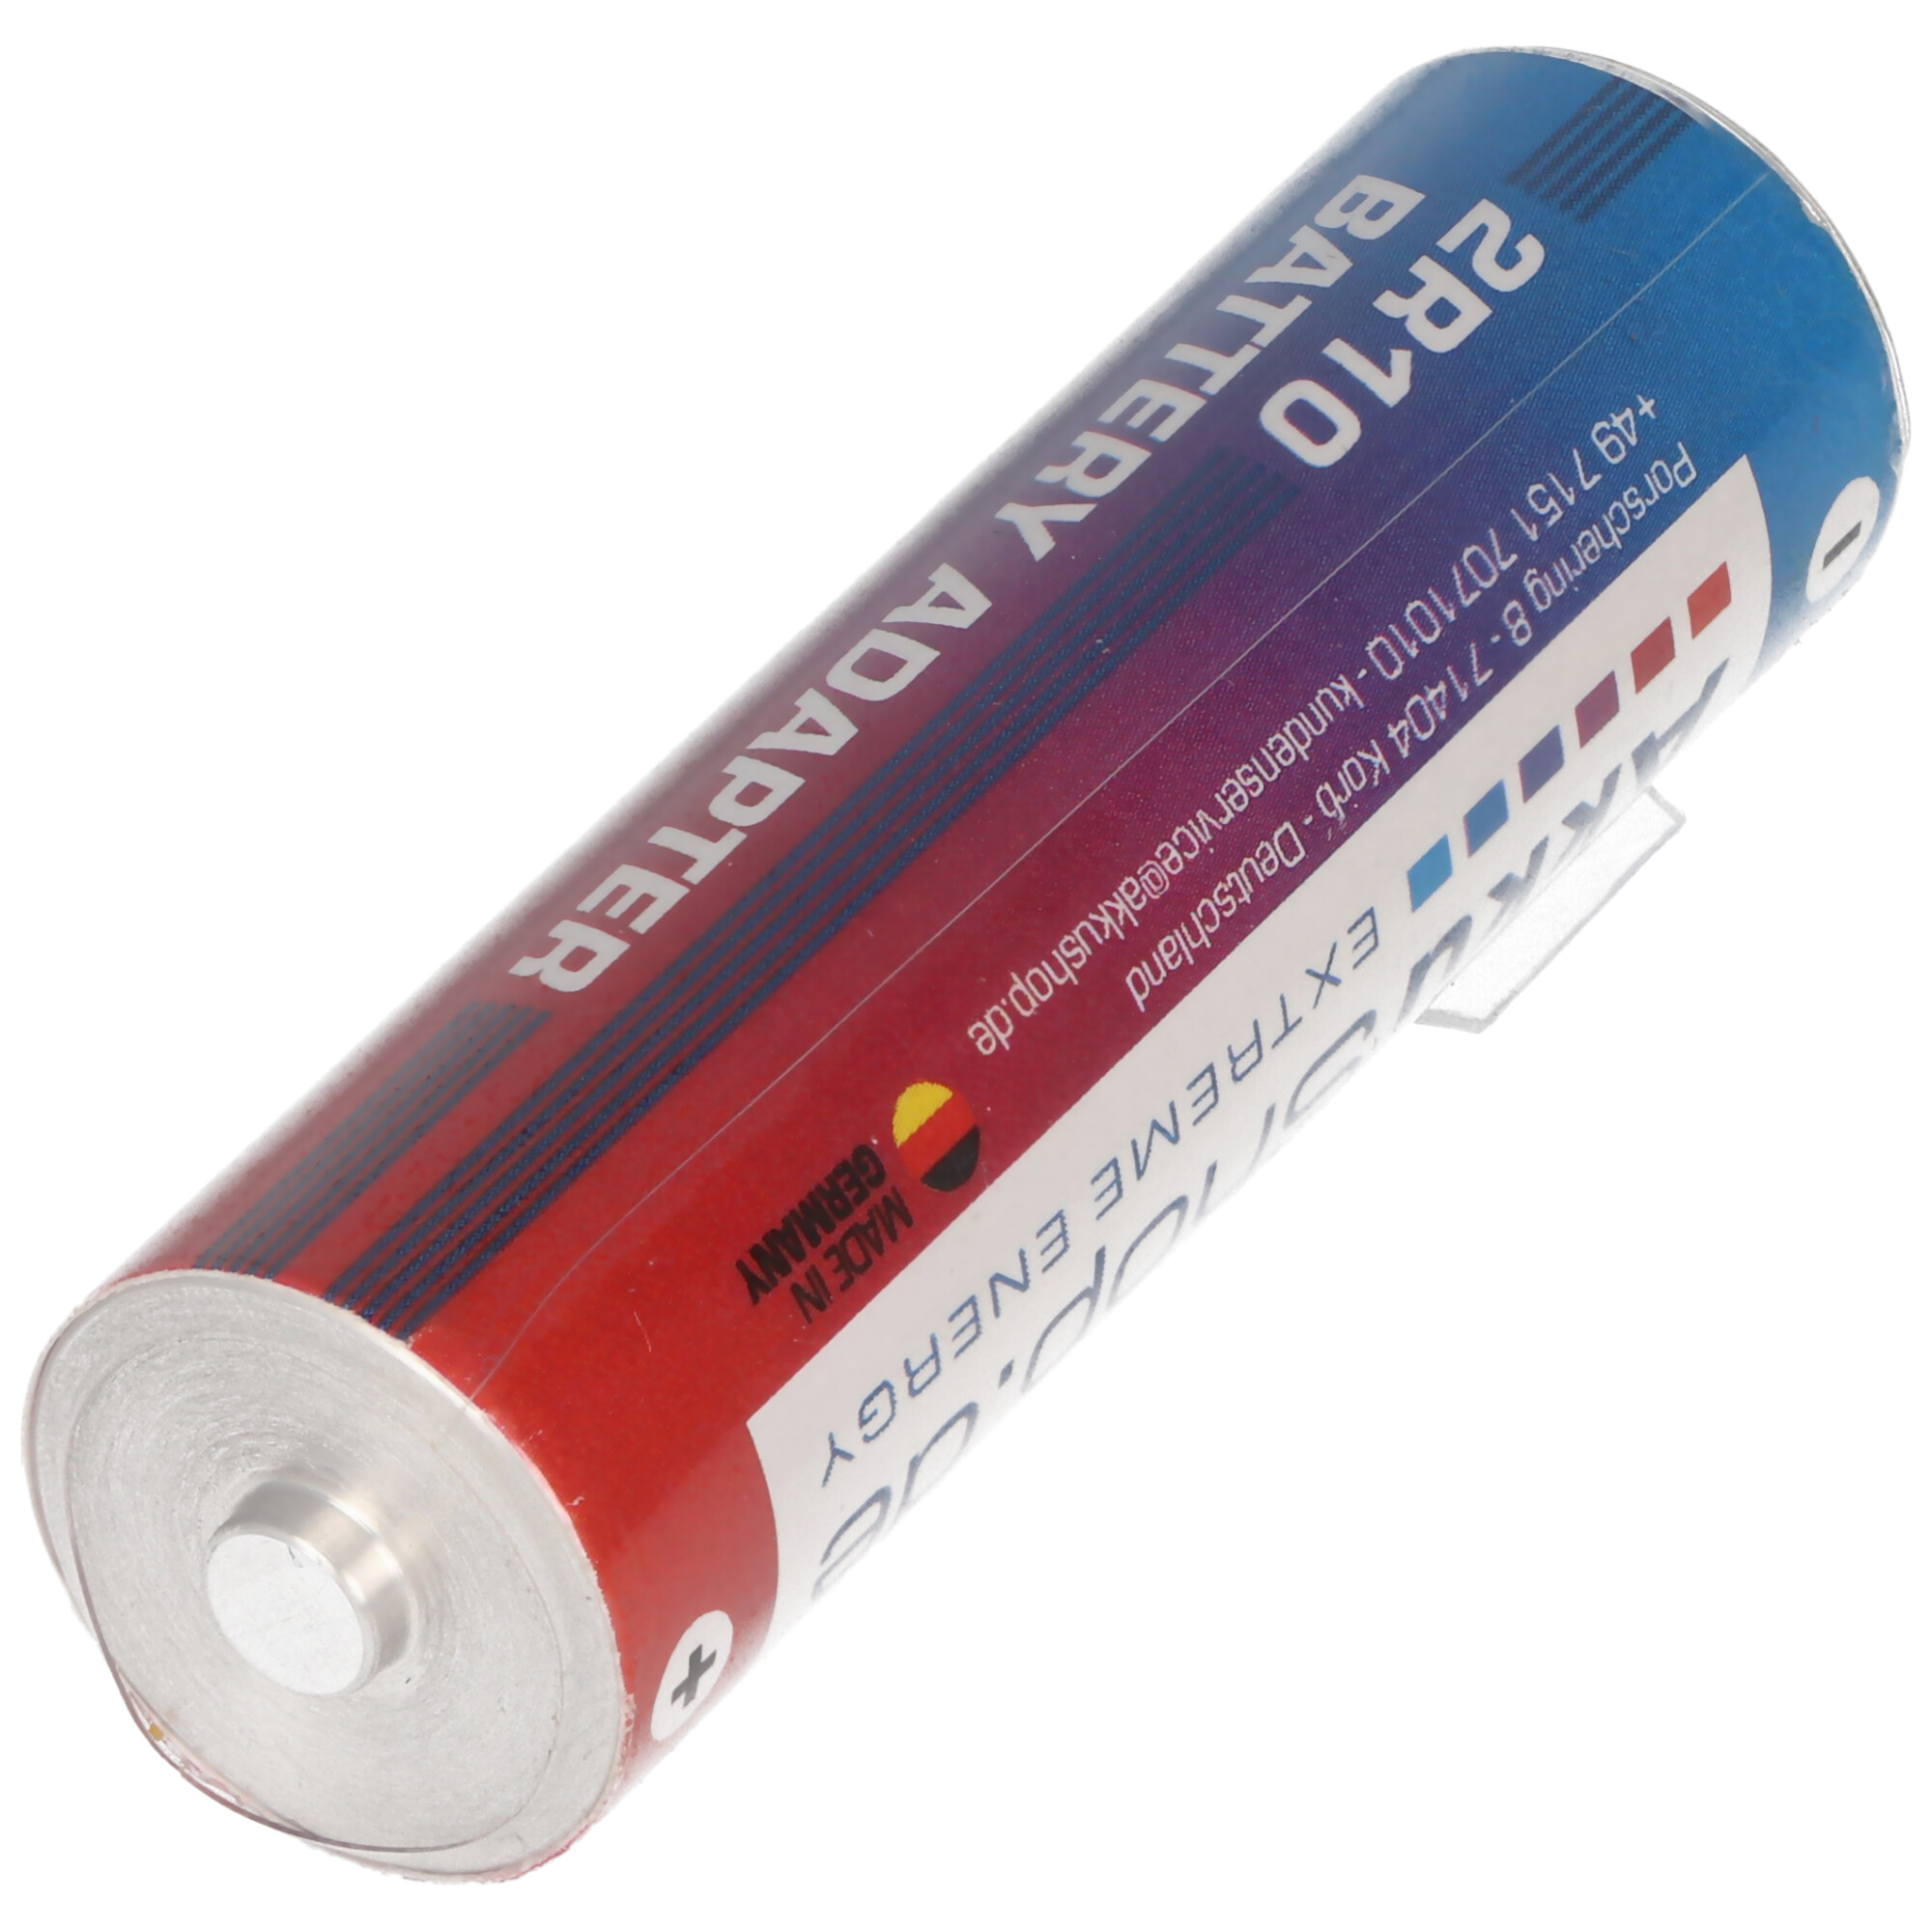 Adapter Batterie 2R10 Duplex Stab-Batterie, 2R10R, 3010, 2010, 3,0 Volt 73x21mm max. 1600mAh